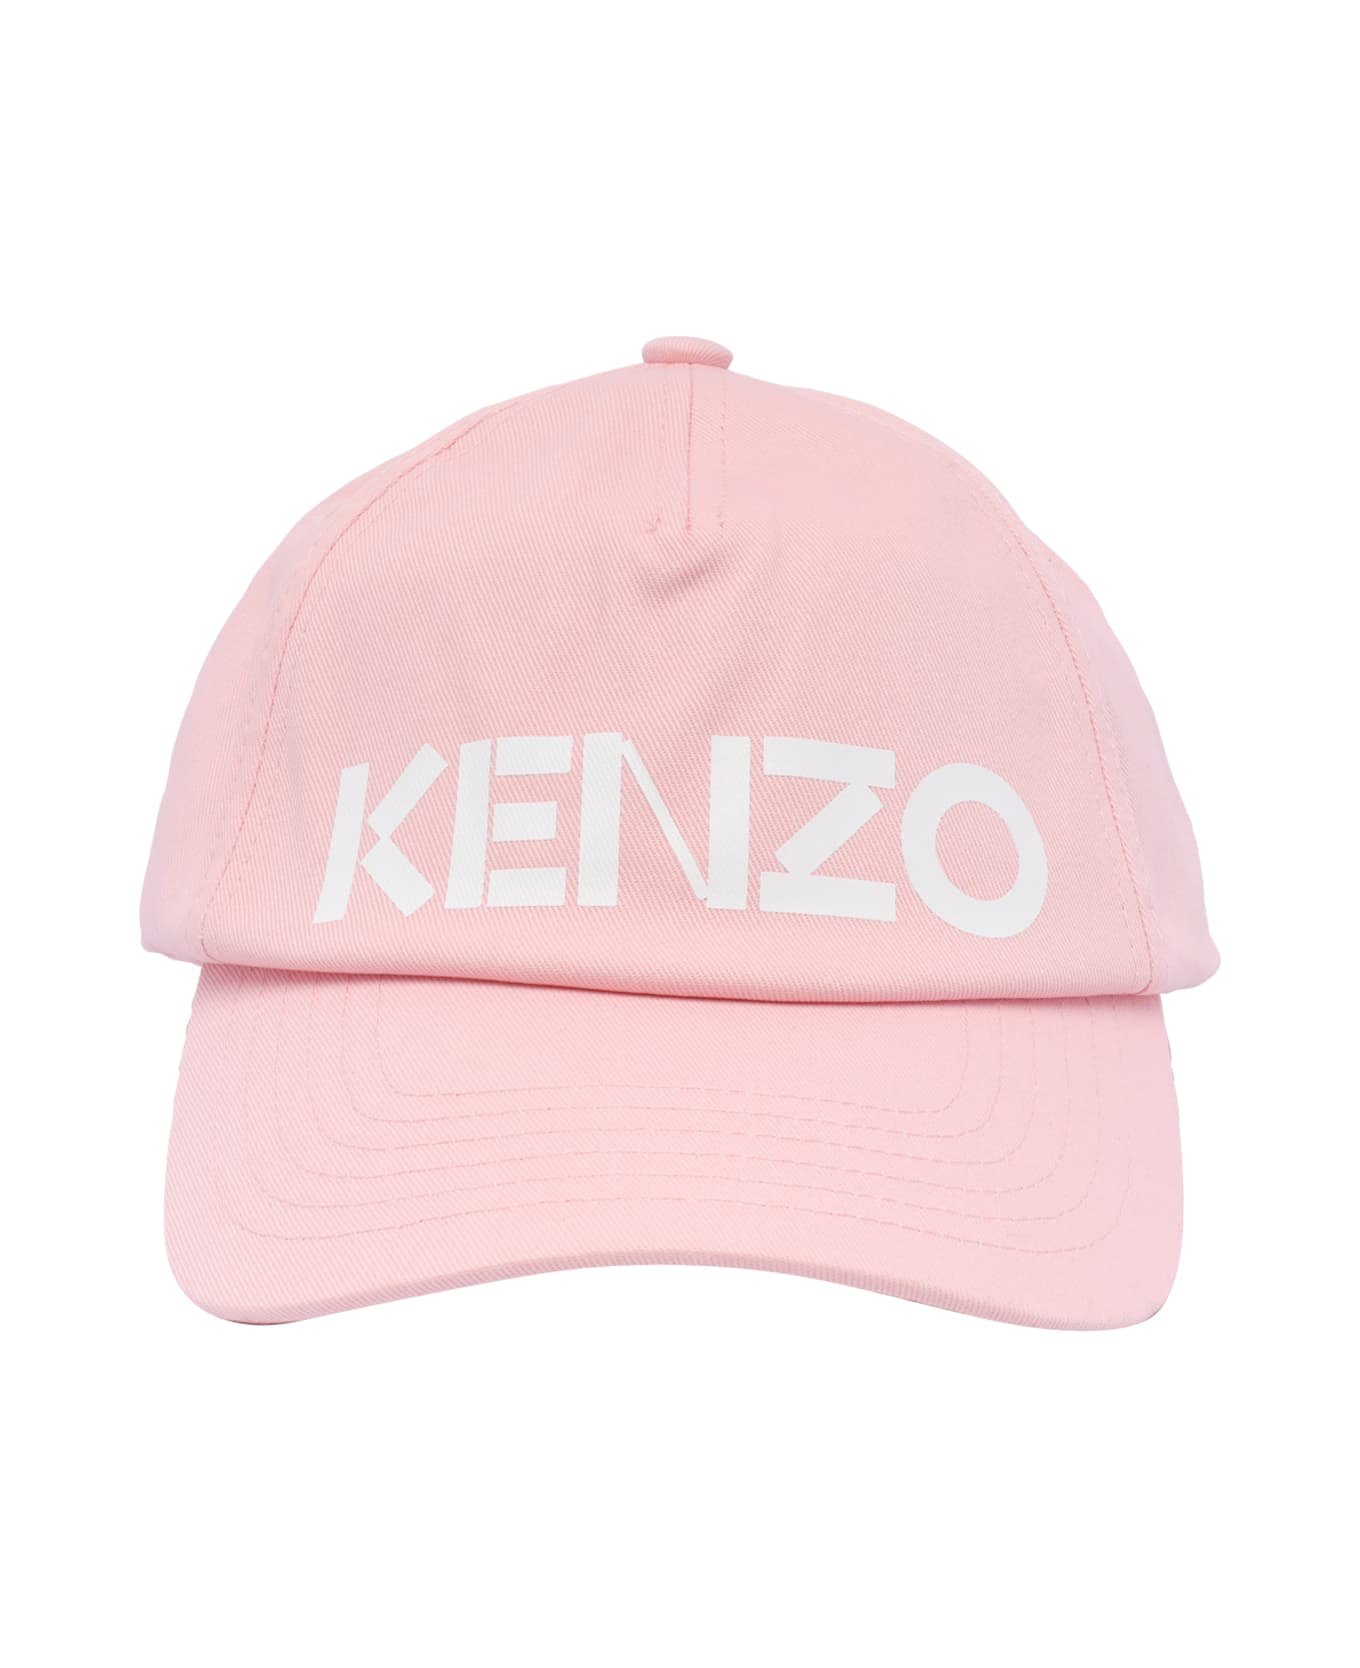 Kenzo Logo Baseball Cap - Pink ヘアアクセサリー